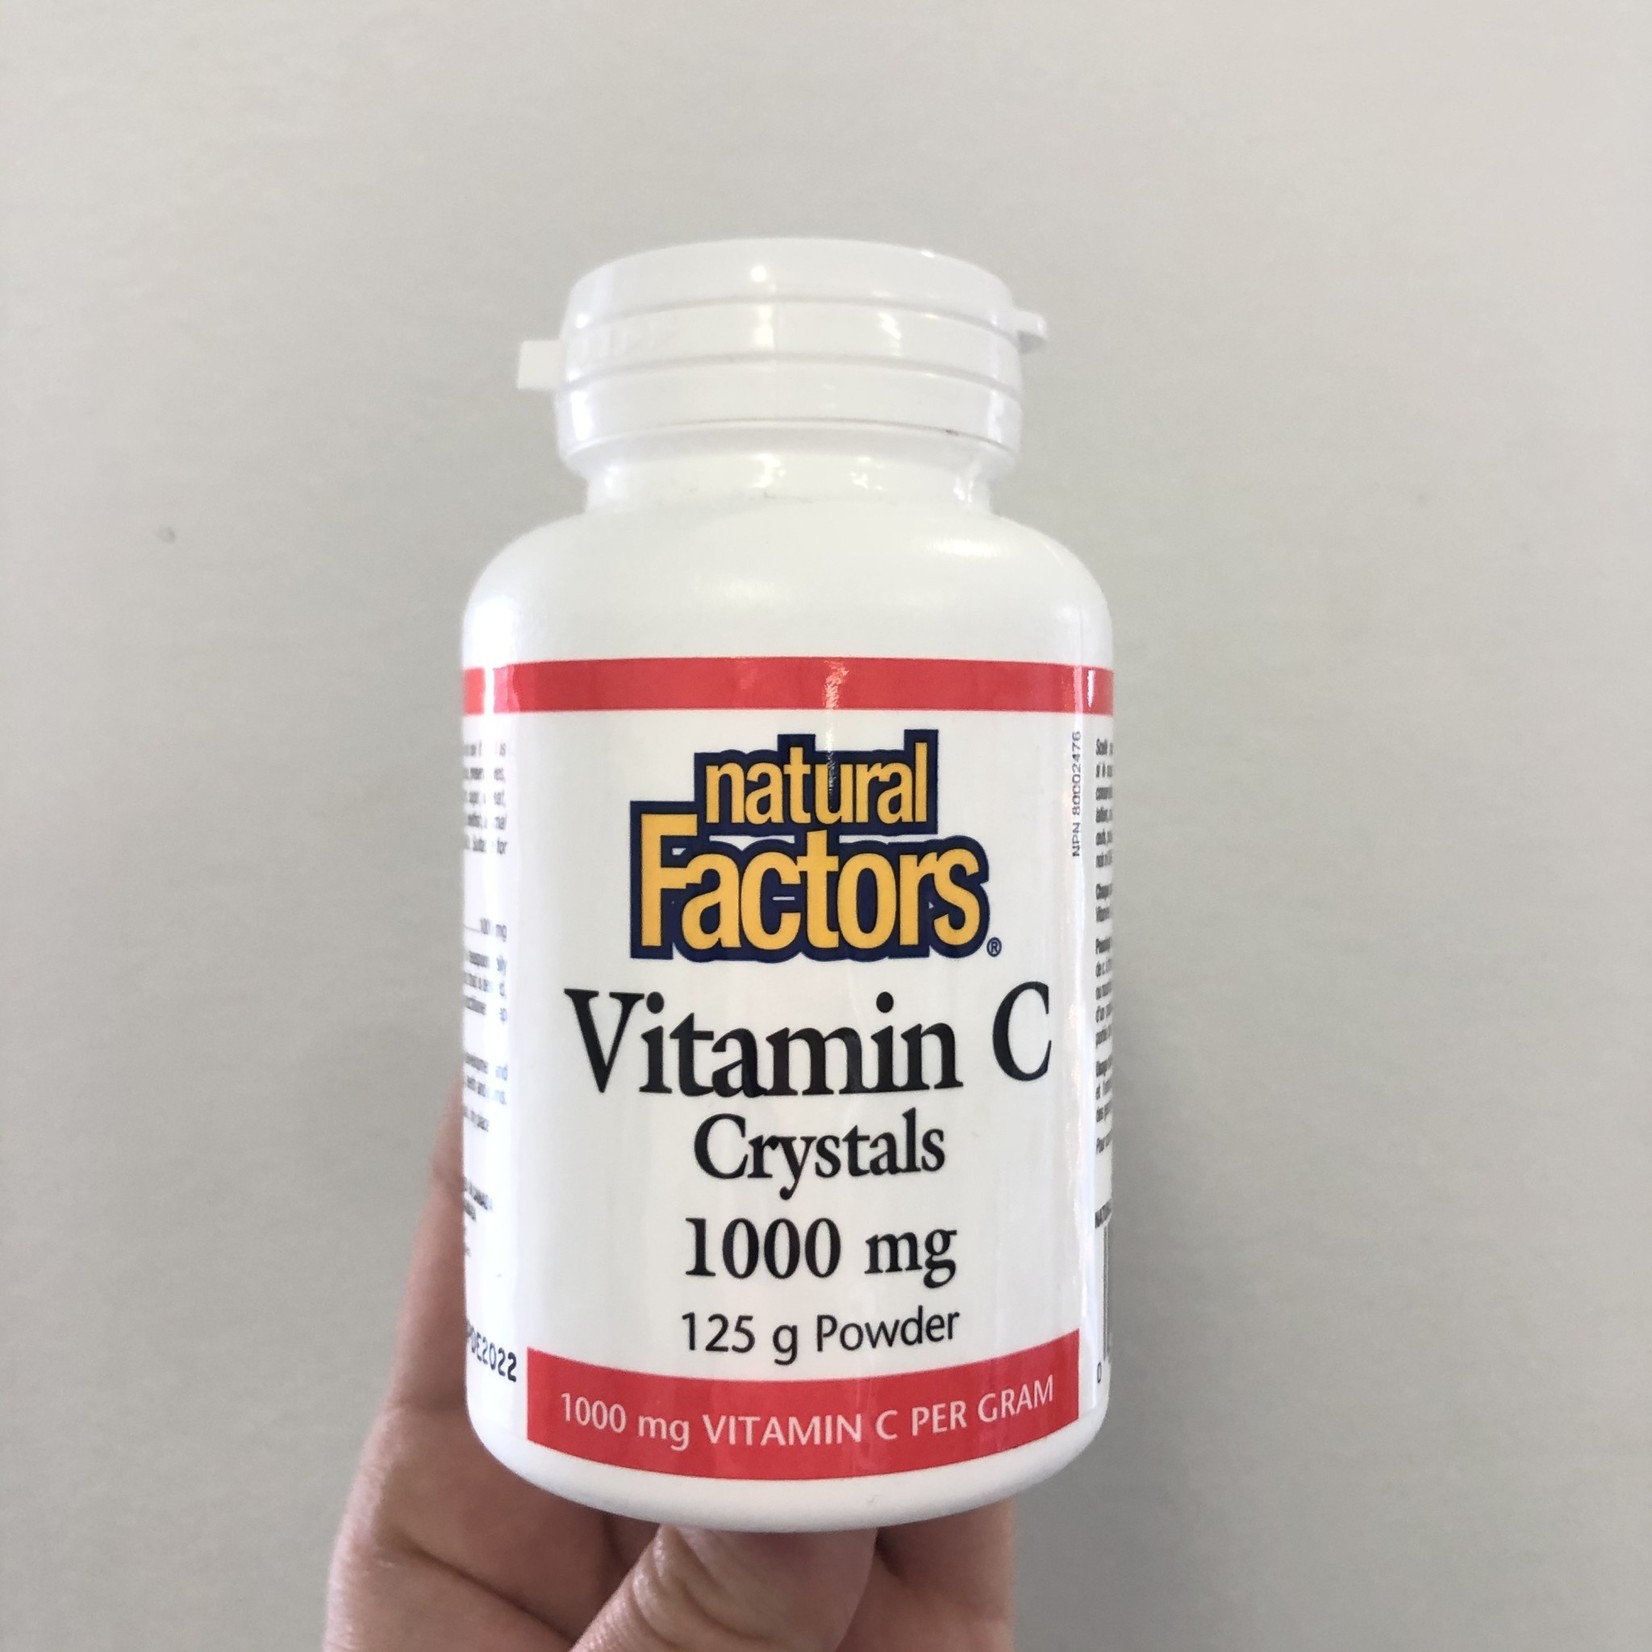 Natural Factors Natural Factors Vitamin C Crystals 1000mg 125g powder